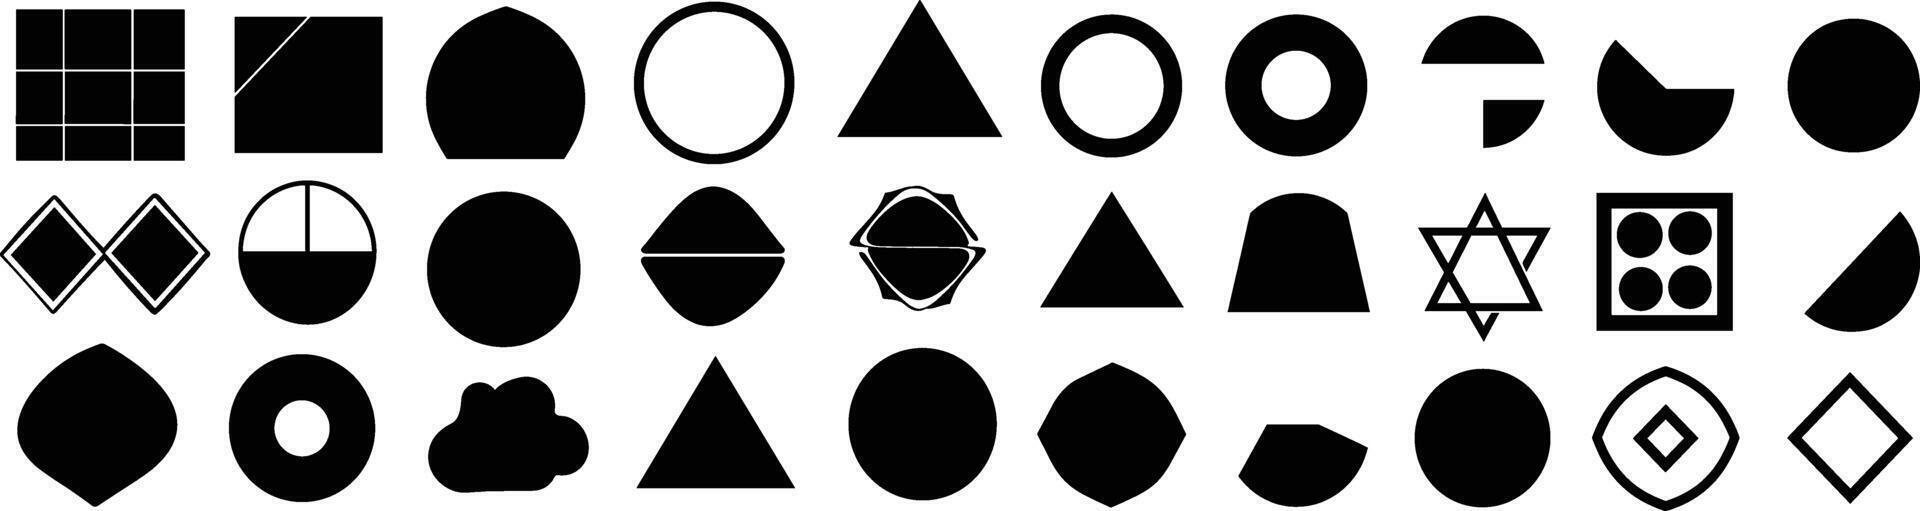 moderno geometrico forme collezione, astratto poligonale elementi e di moda minimalista figure, vettore illustrazione di di base cerchi, esagoni, triangoli, e stelle nel piatto stile